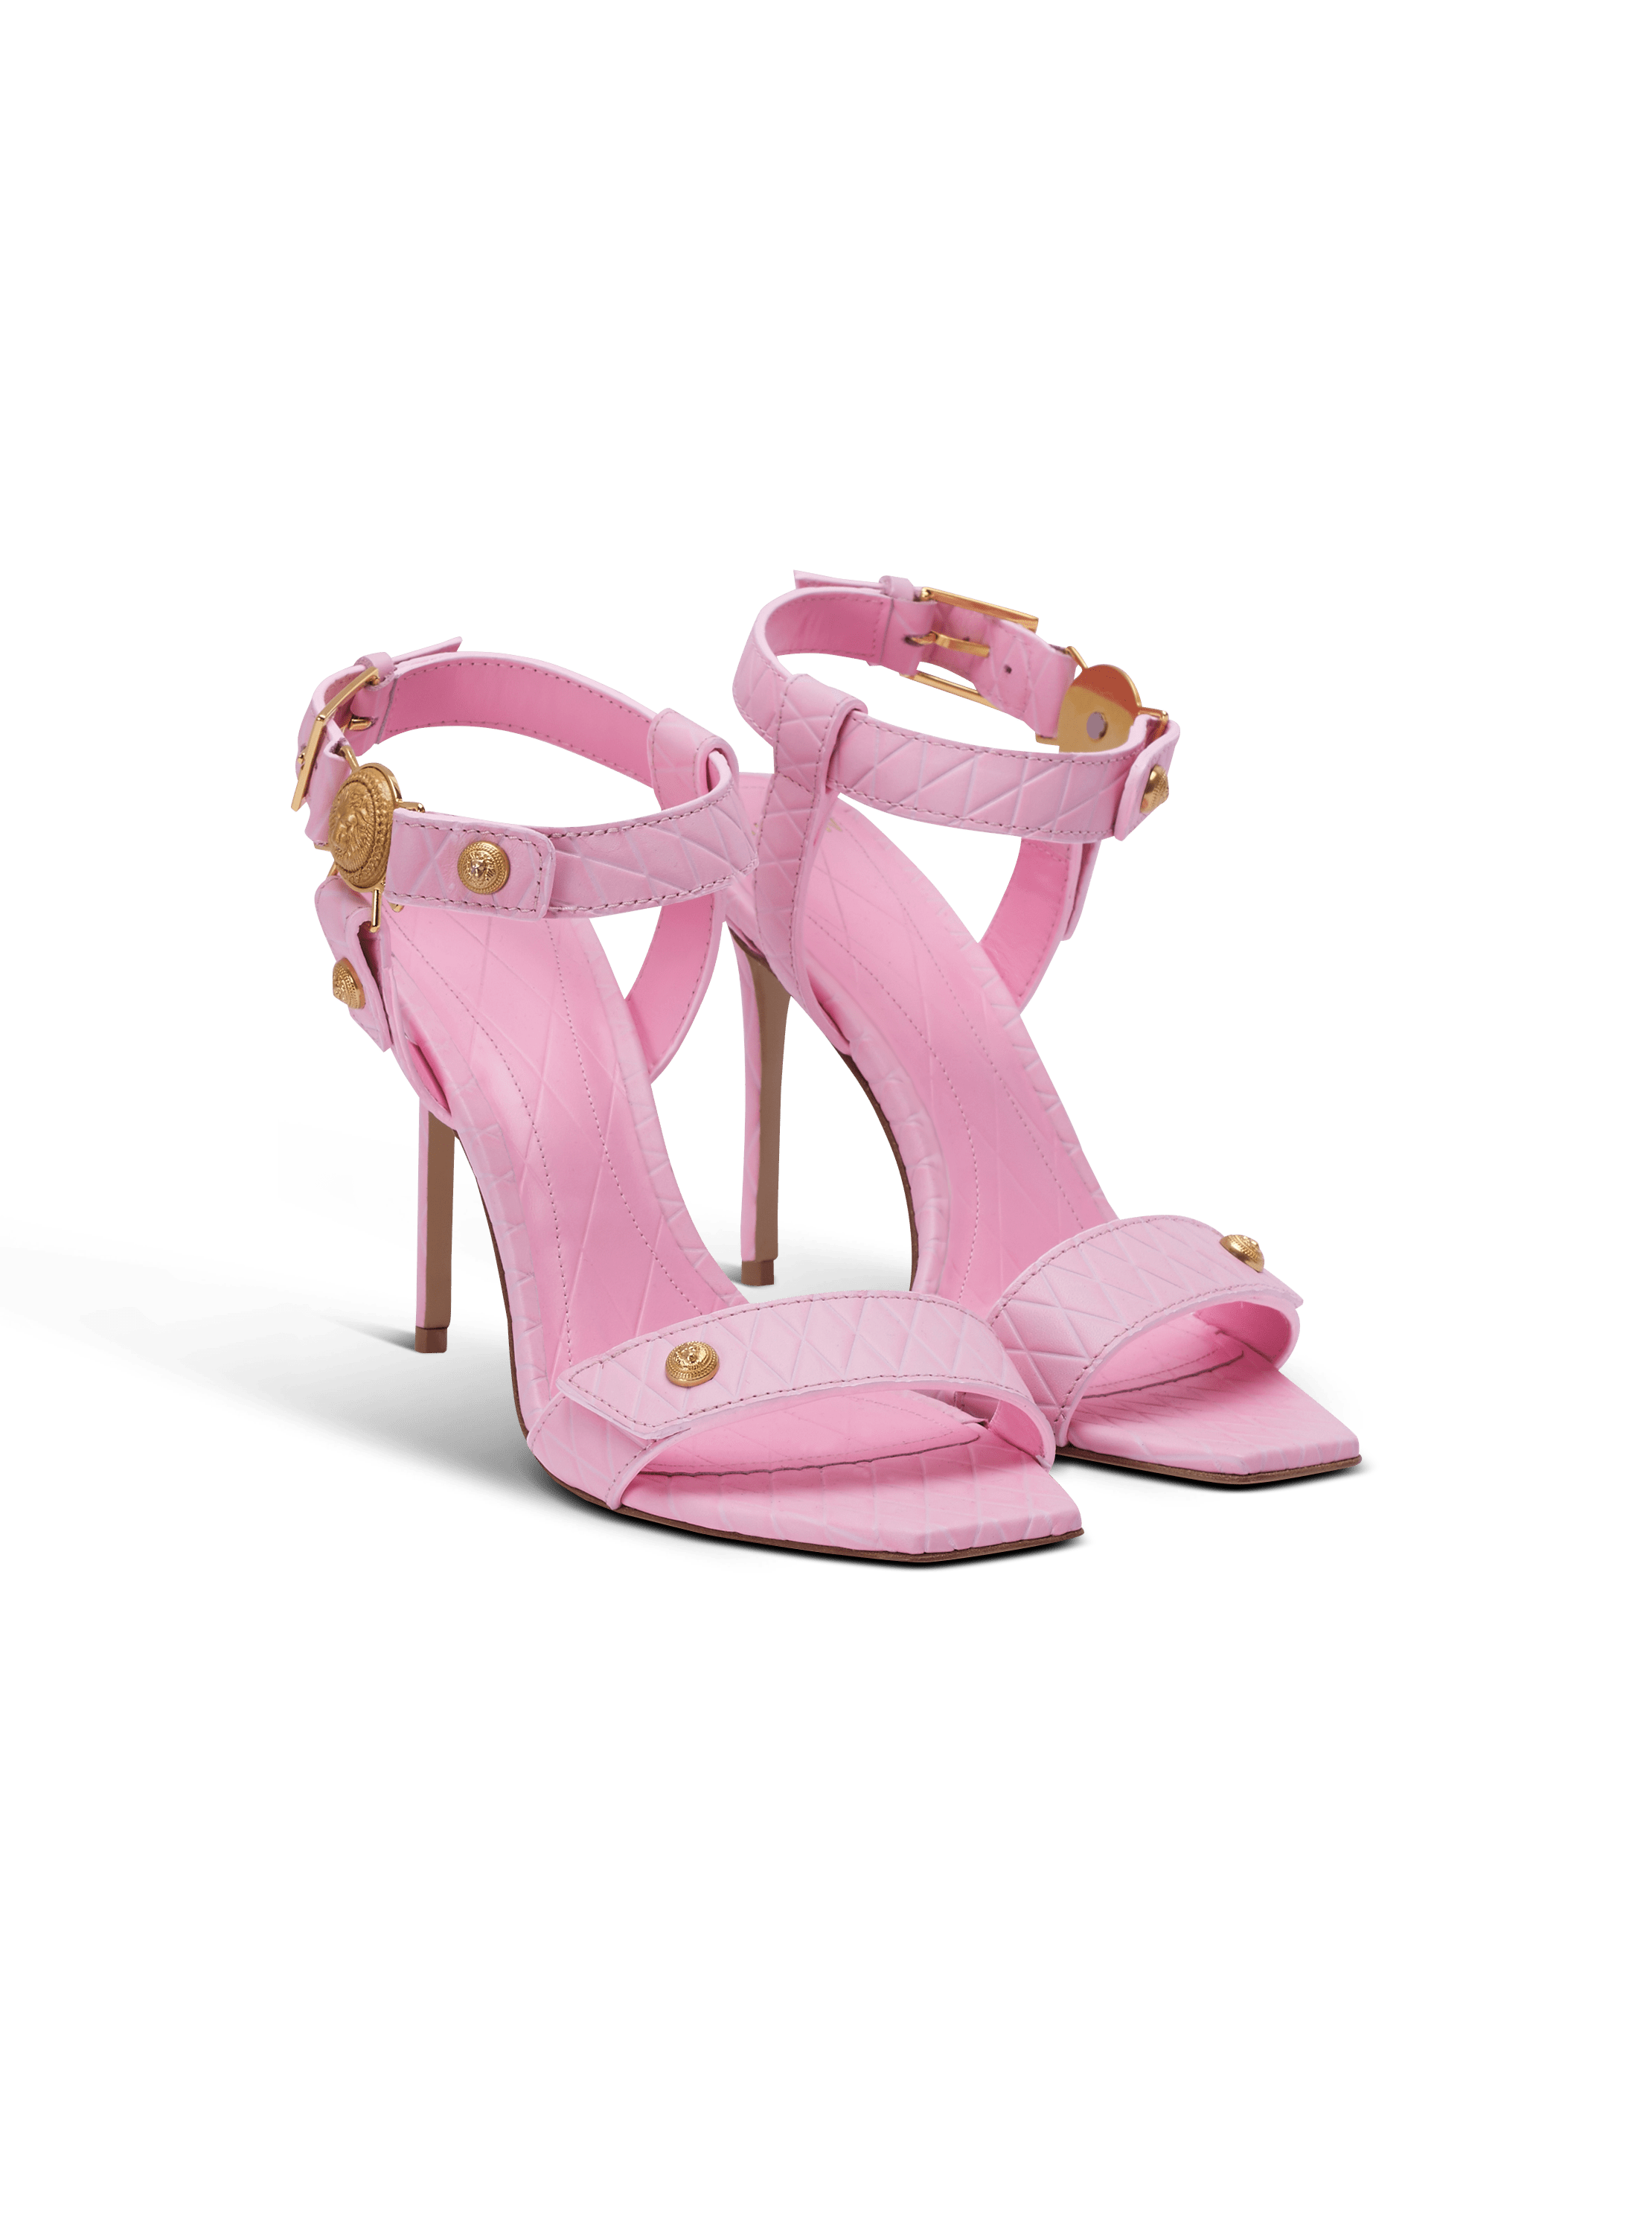 Heeled Eva sandals in calfskin